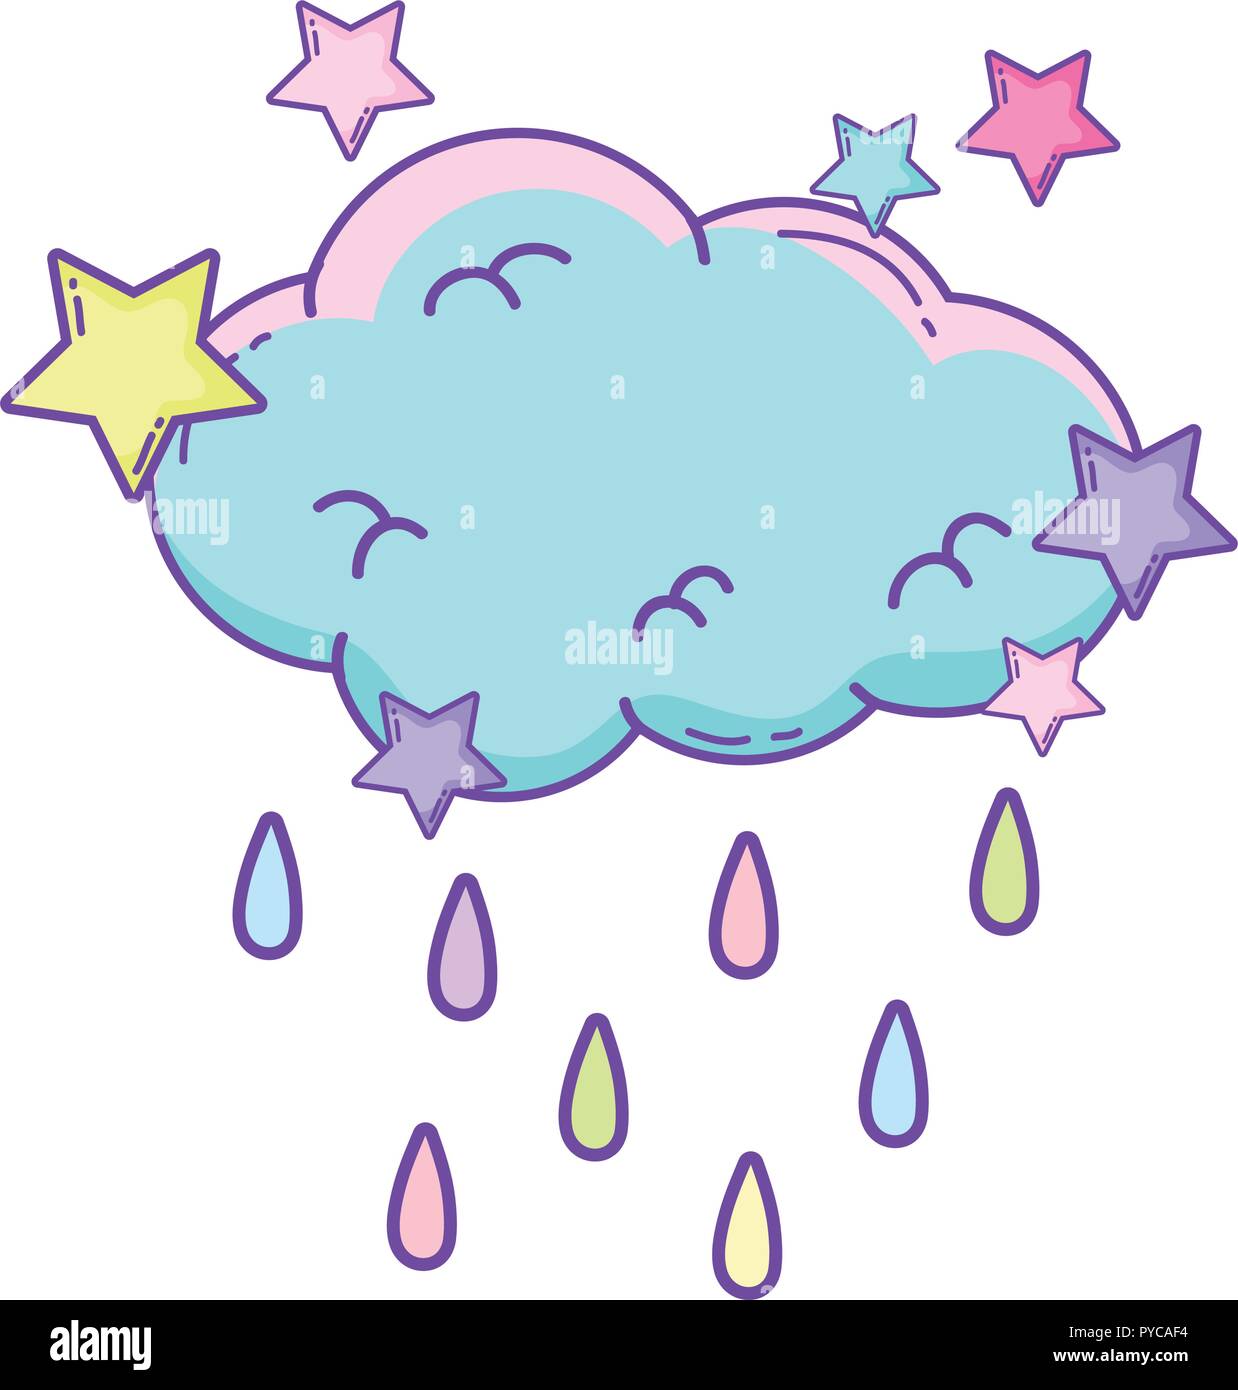 Cute cloud cartoon Stock Vector